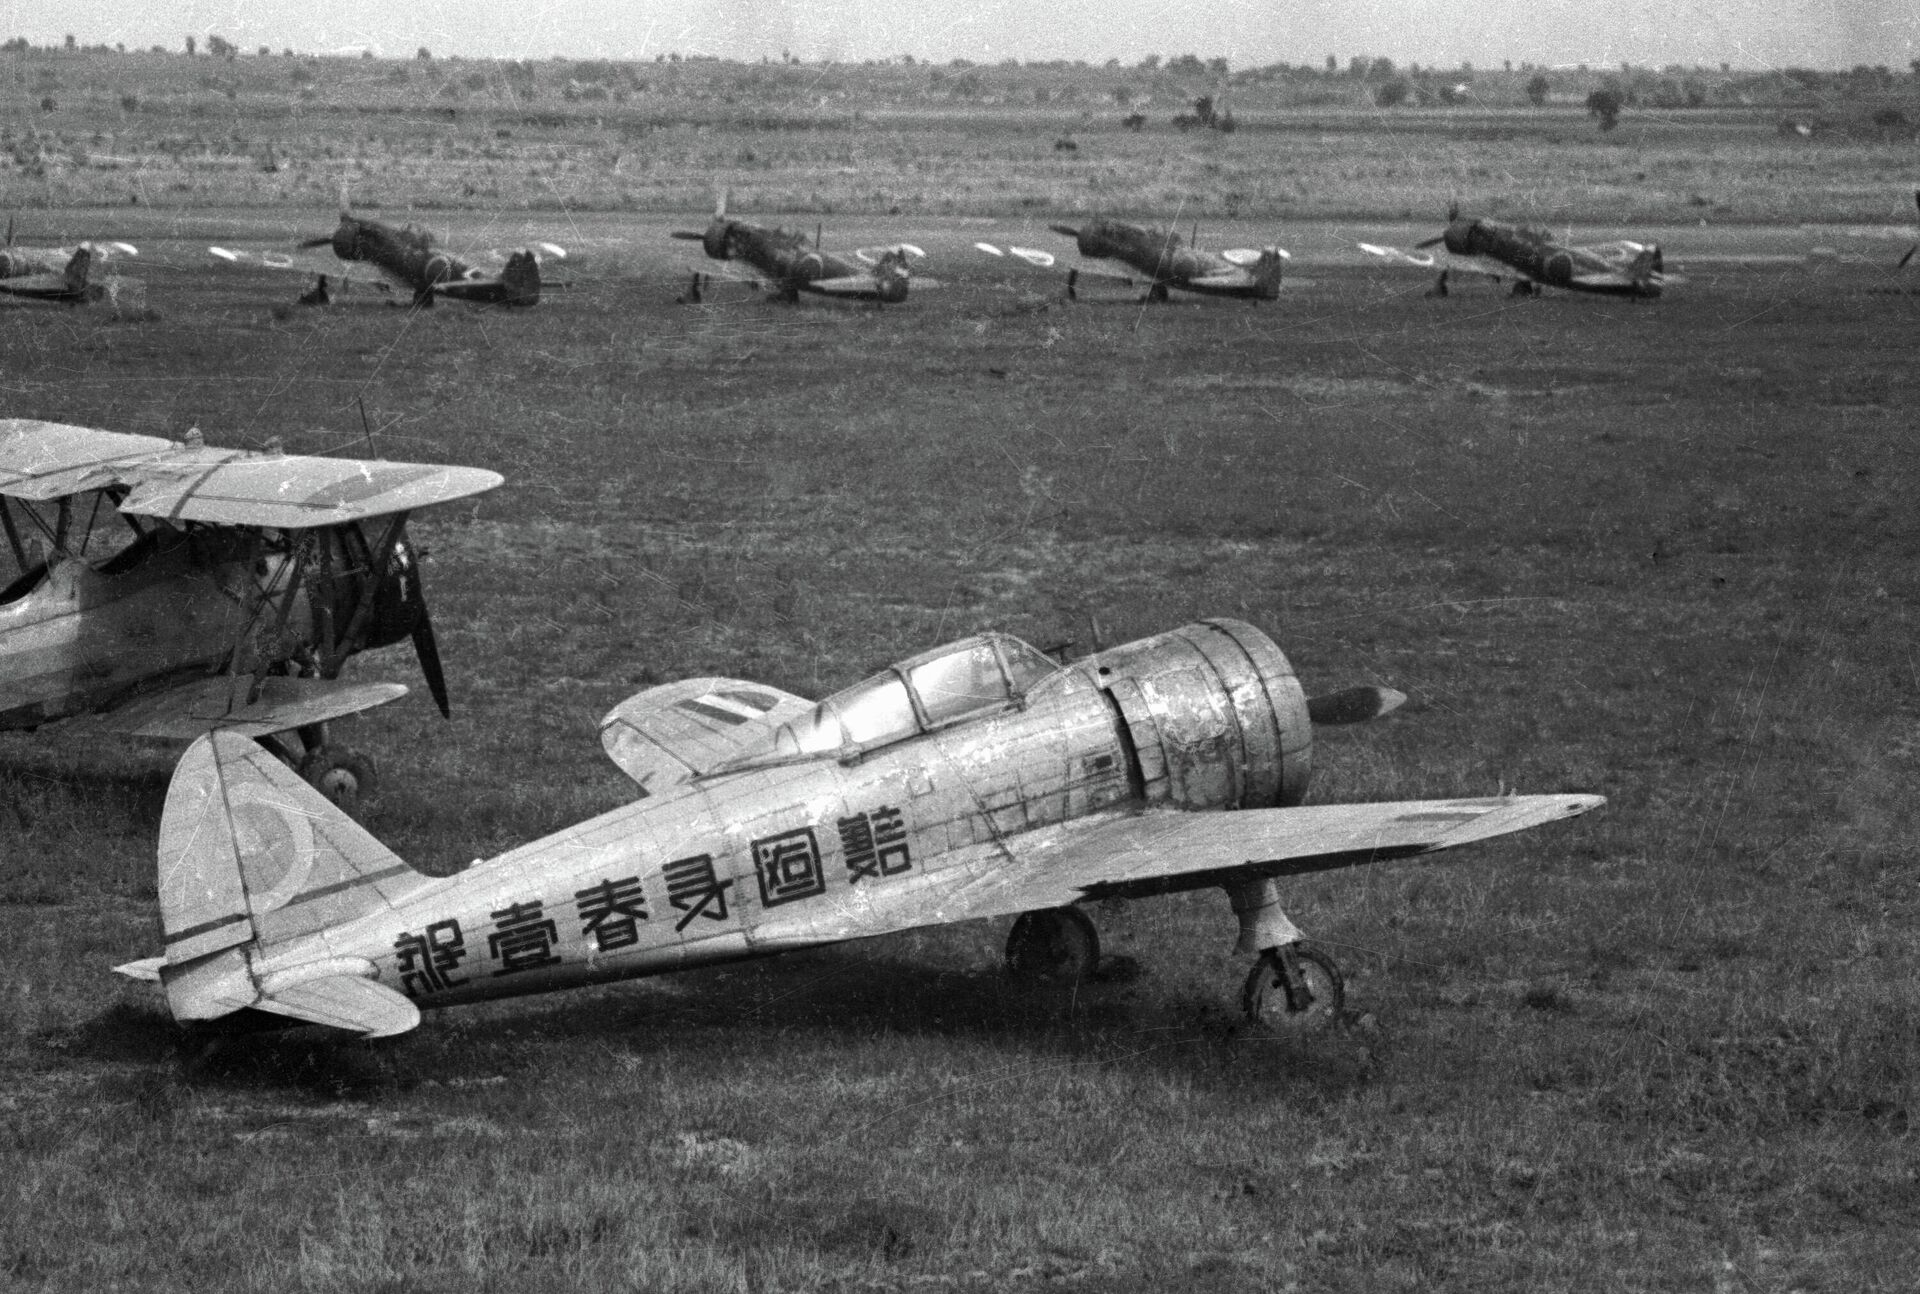 Японские самолеты на аэродроме во время Второй мировой войны - РИА Новости, 1920, 11.11.2020